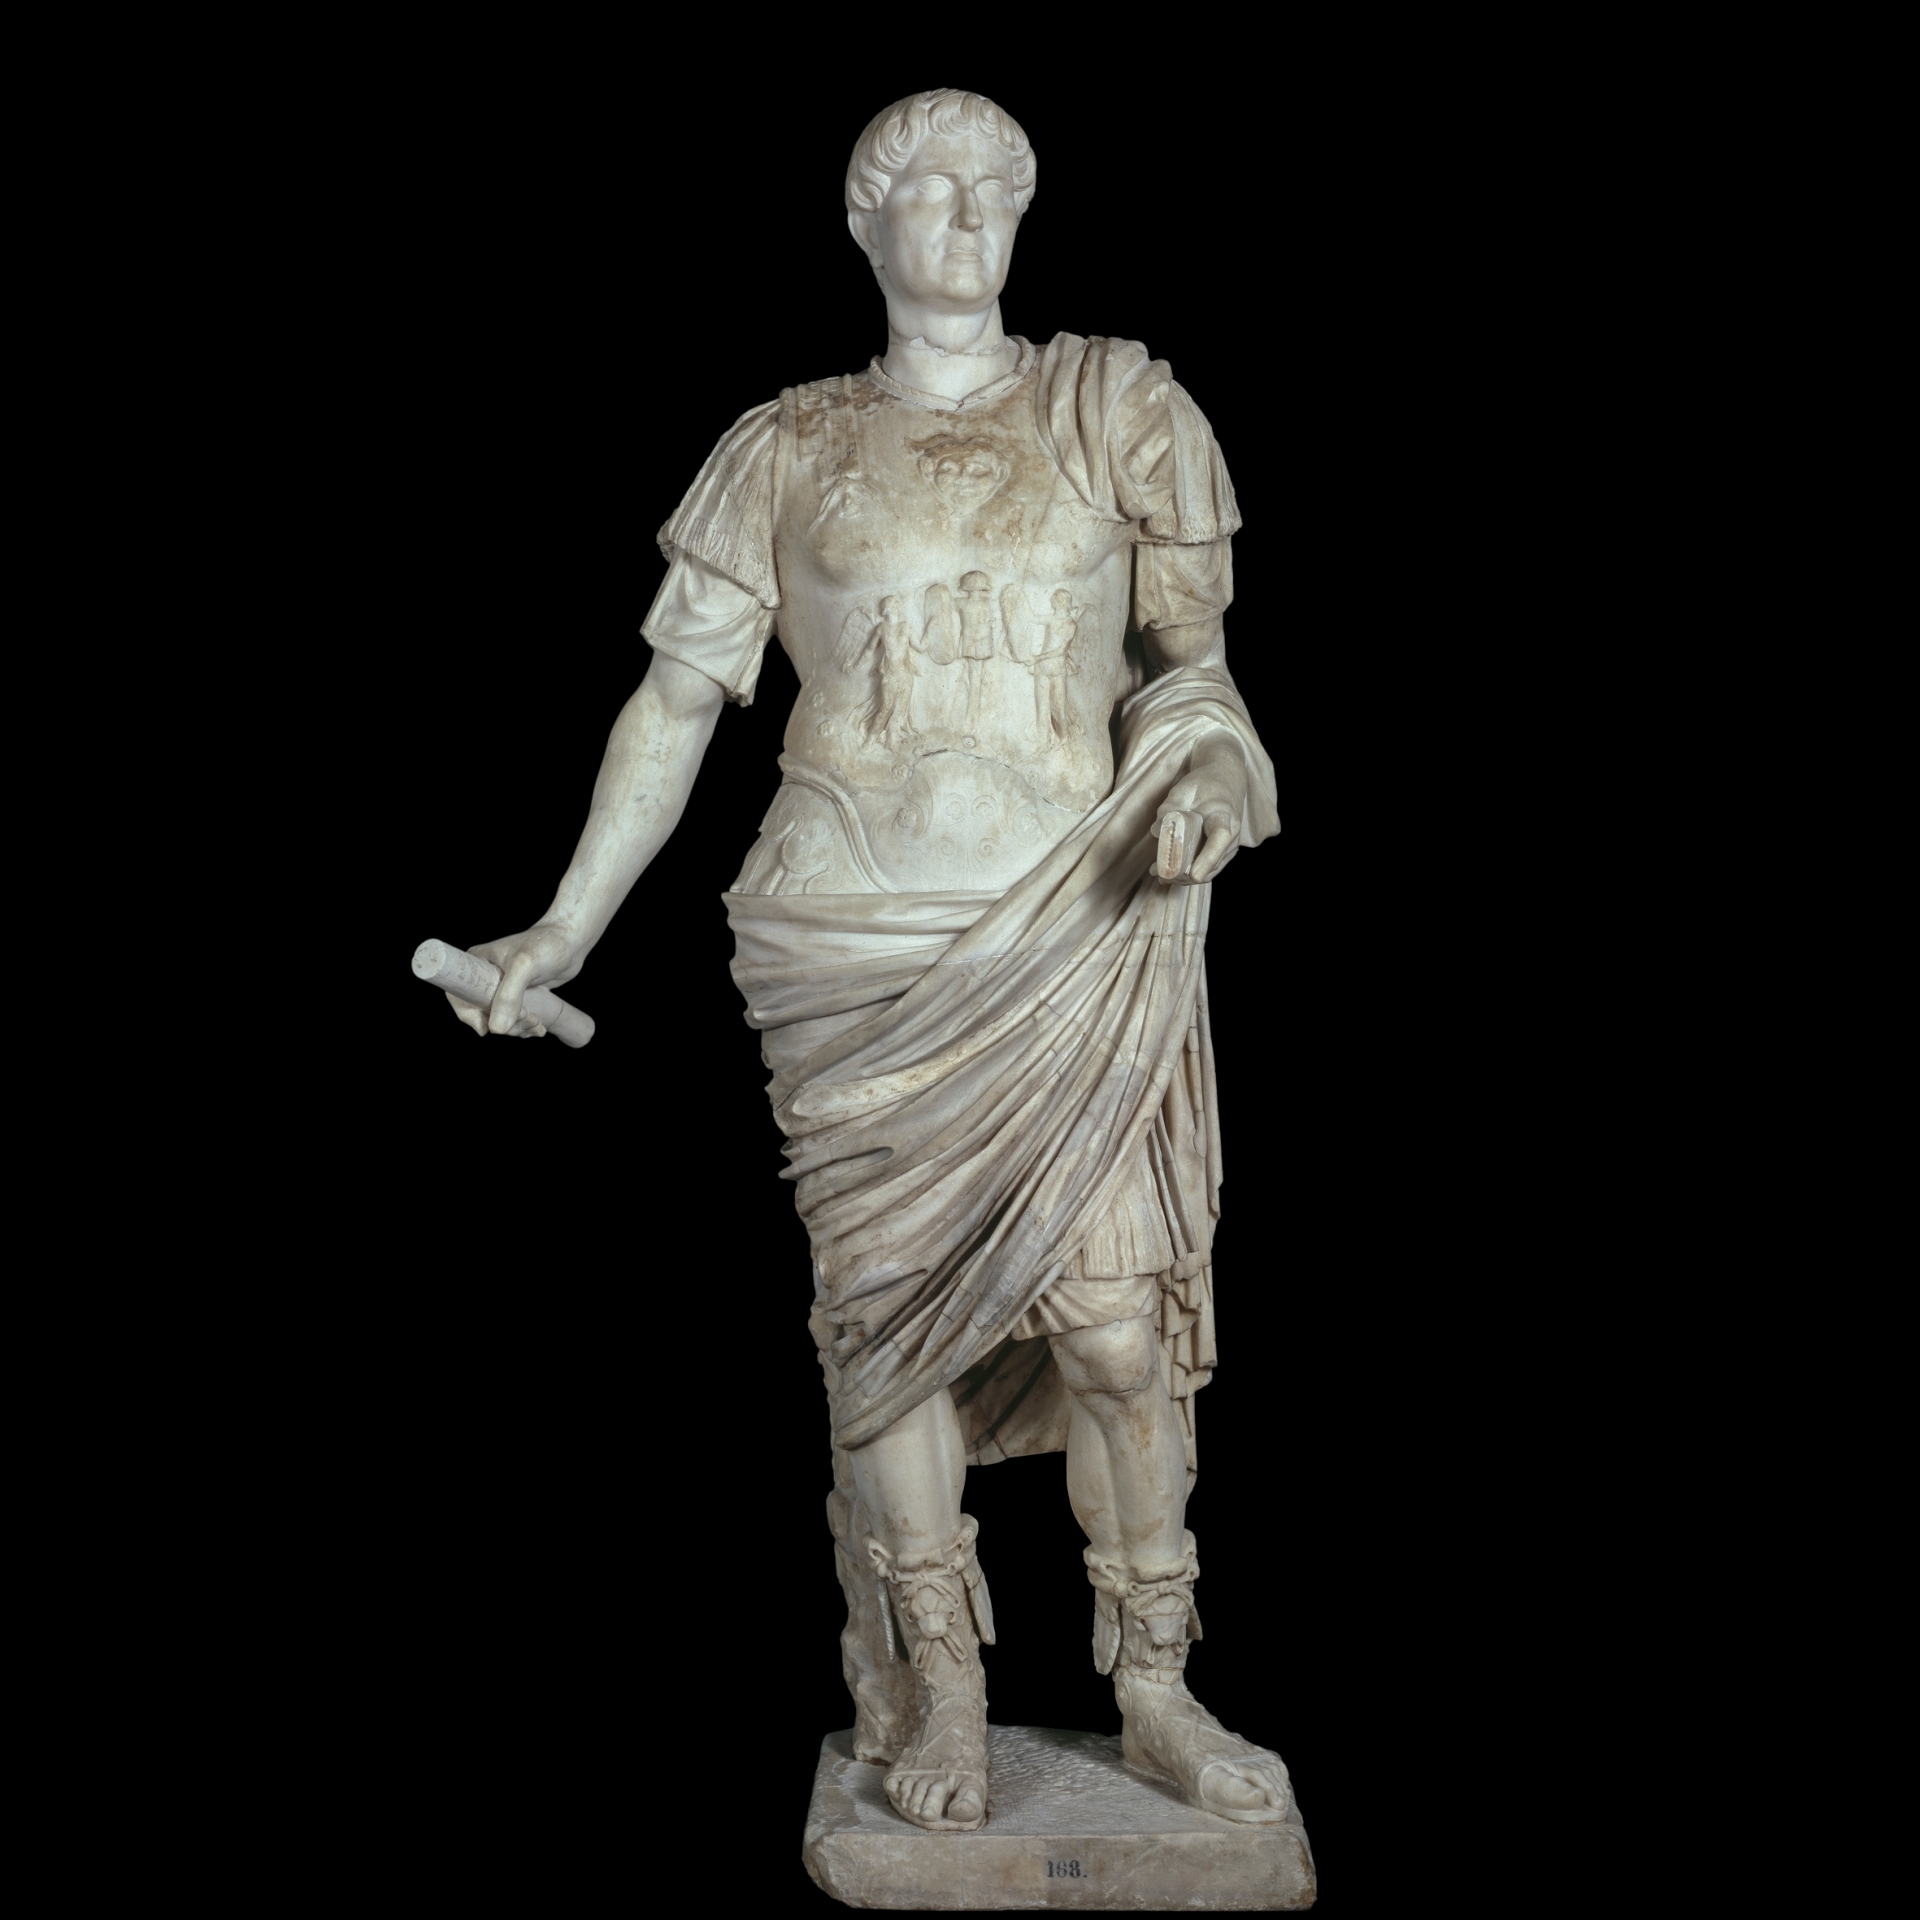 roman emperor augustus costume